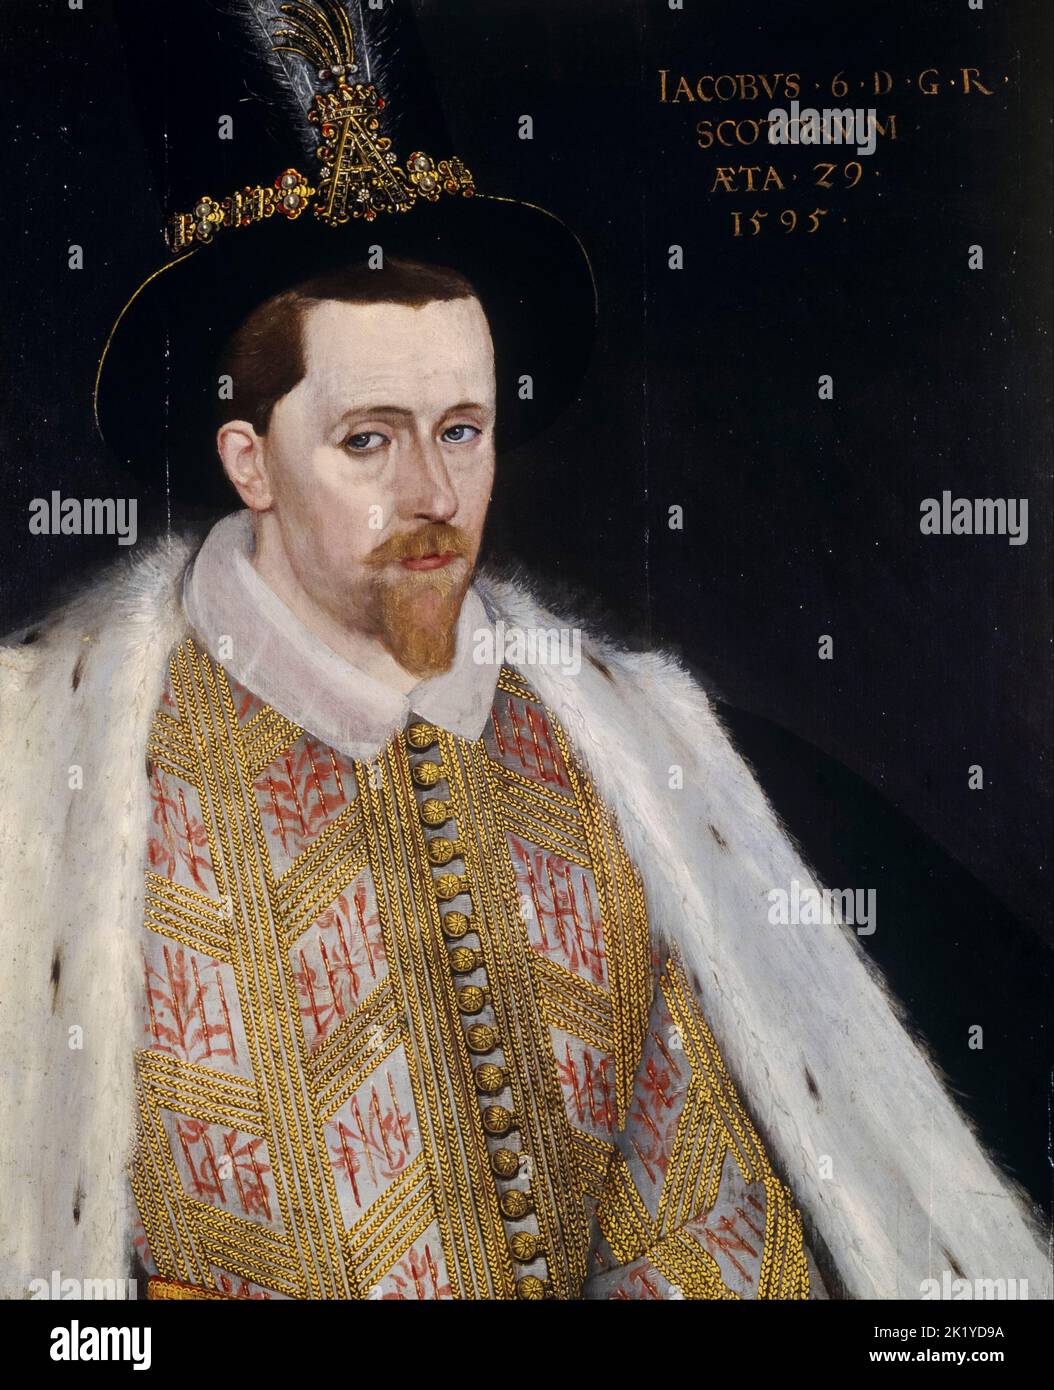 James VI. Und I (1566-1625), König von Schottland (1567-1625), König von England und Irland (1603-1625), Porträt in Öl auf Tafel Adrian Vanson zugeschrieben, 1595 Stockfoto